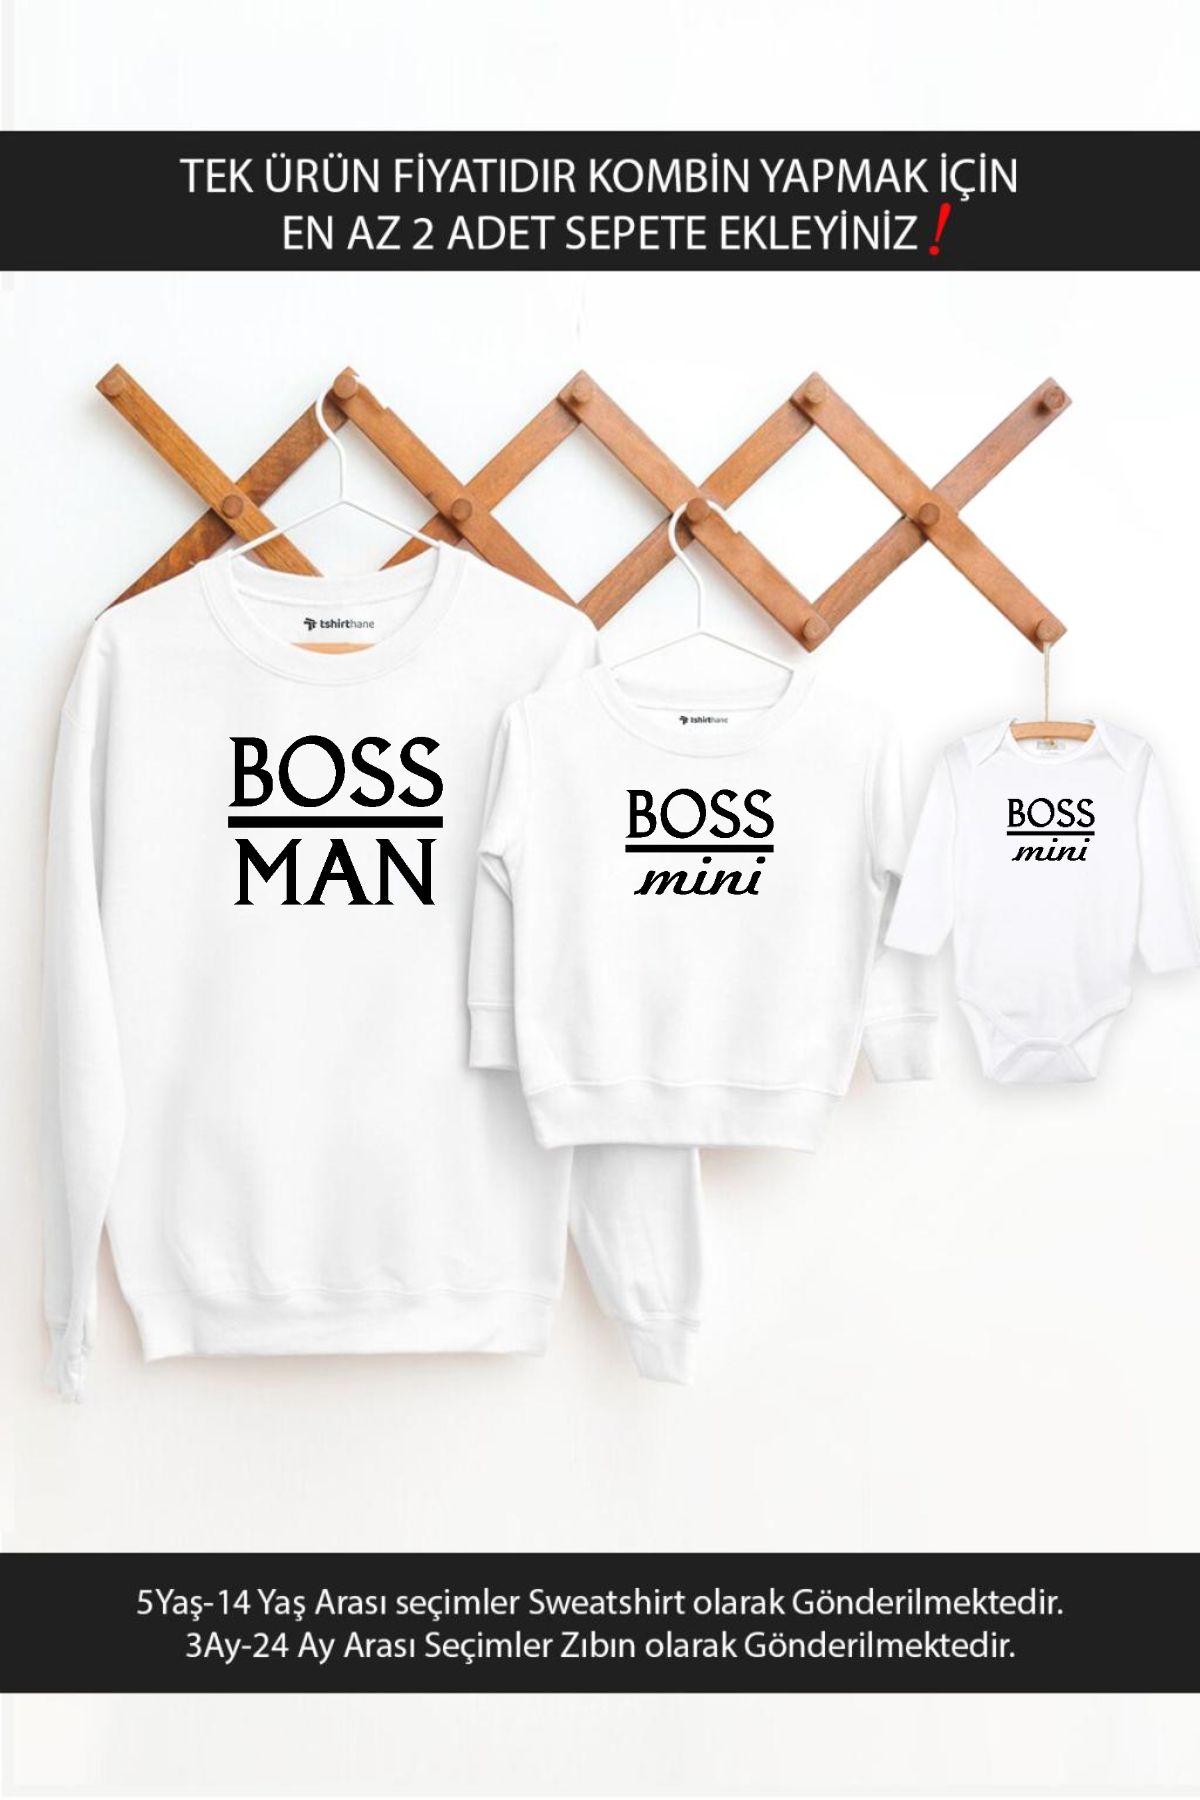 Baba Oğul Kız Boss Man Boss Mini(TEK ÜRÜN FİYATIDIR KOMBİN YAPMAK İÇİN EN AZ 2 ADET SEPETE EKLEYİNİZ